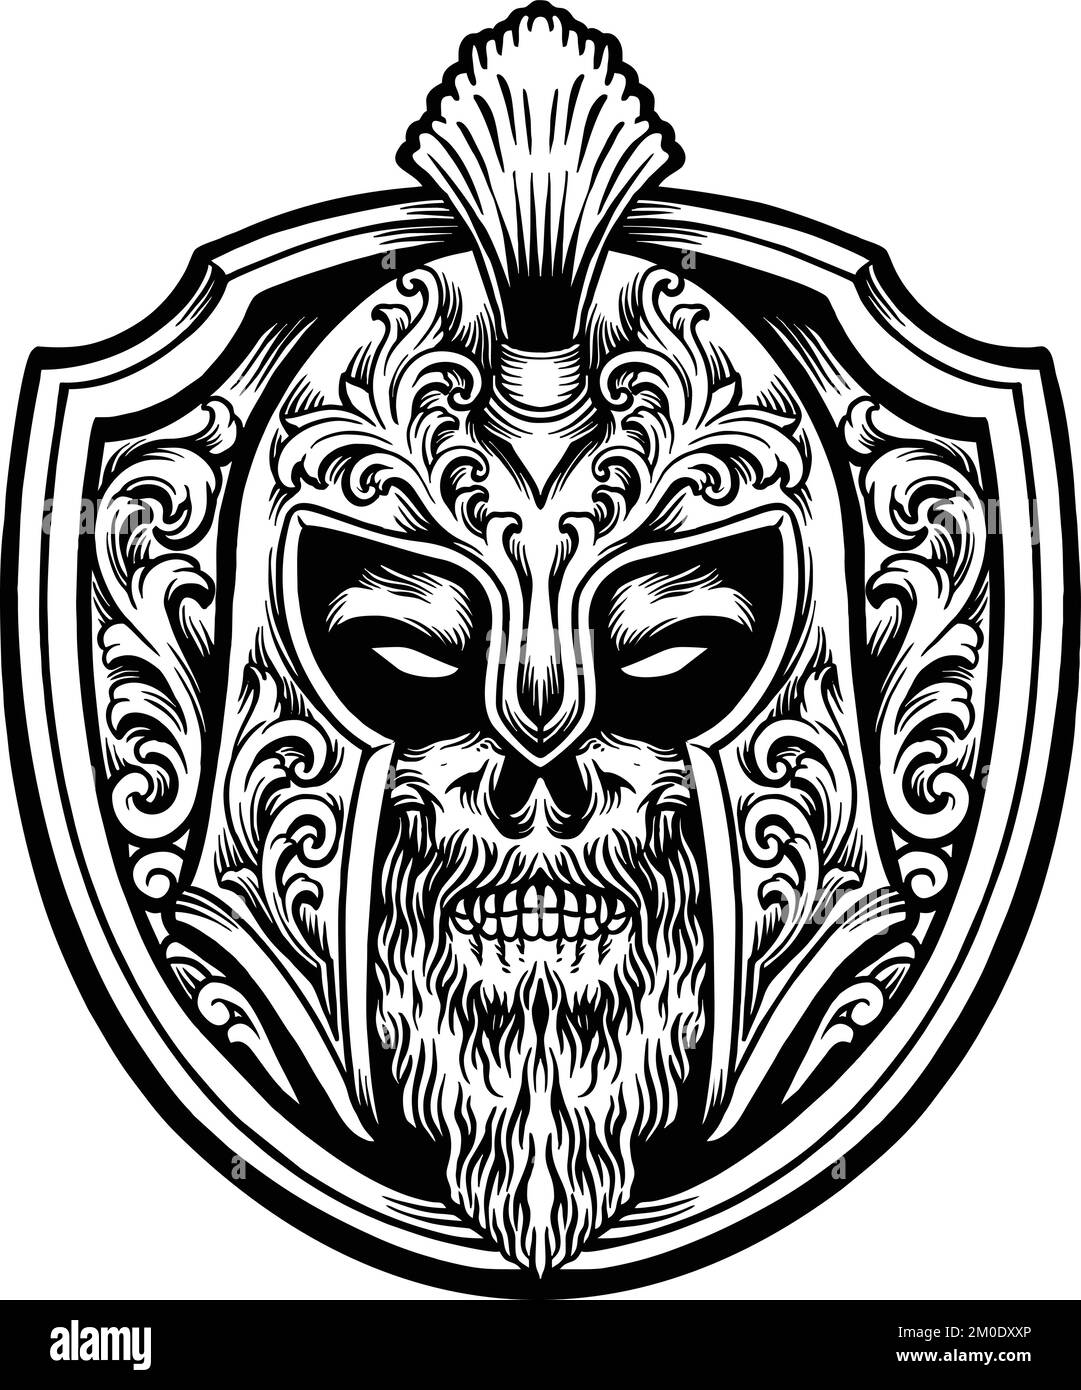 Les ornements de la mascotte de Spartan Shield présentent des illustrations vectorielles pour votre logo de travail, t-shirt de marchandise, autocollants et dessins d'étiquettes, affiche Illustration de Vecteur